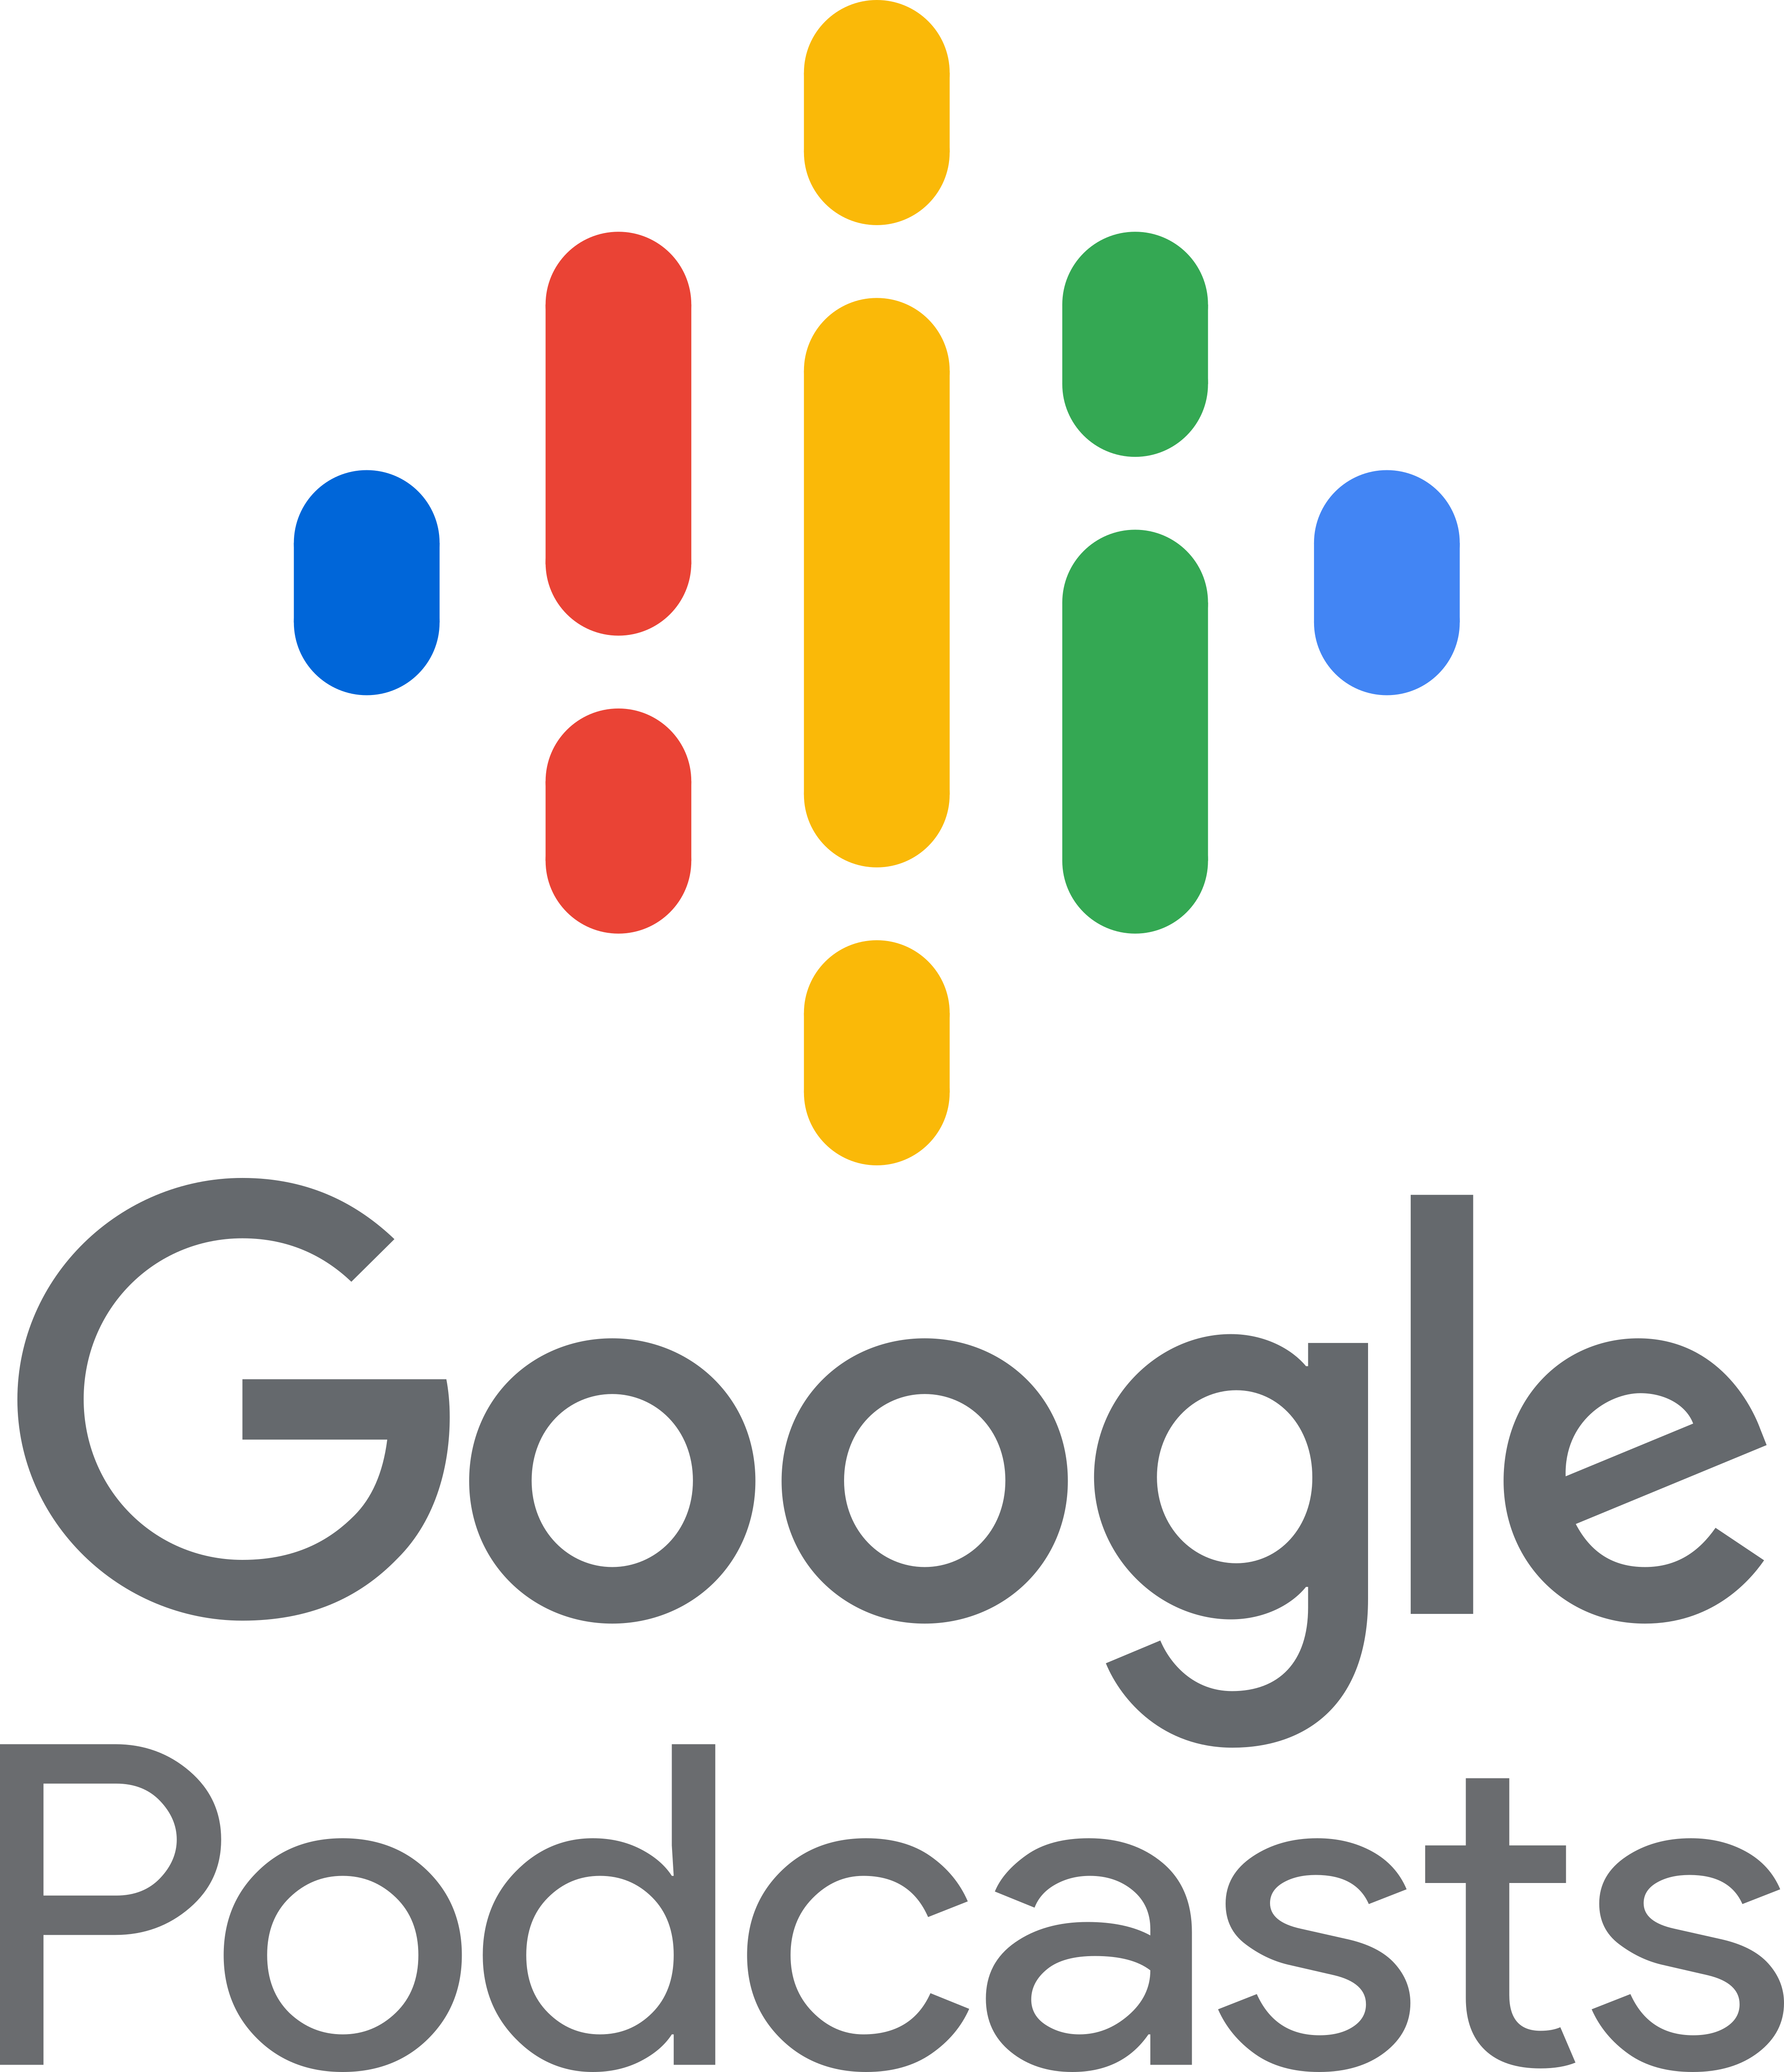 google podcasts logo 6 - Google Podcasts Logo